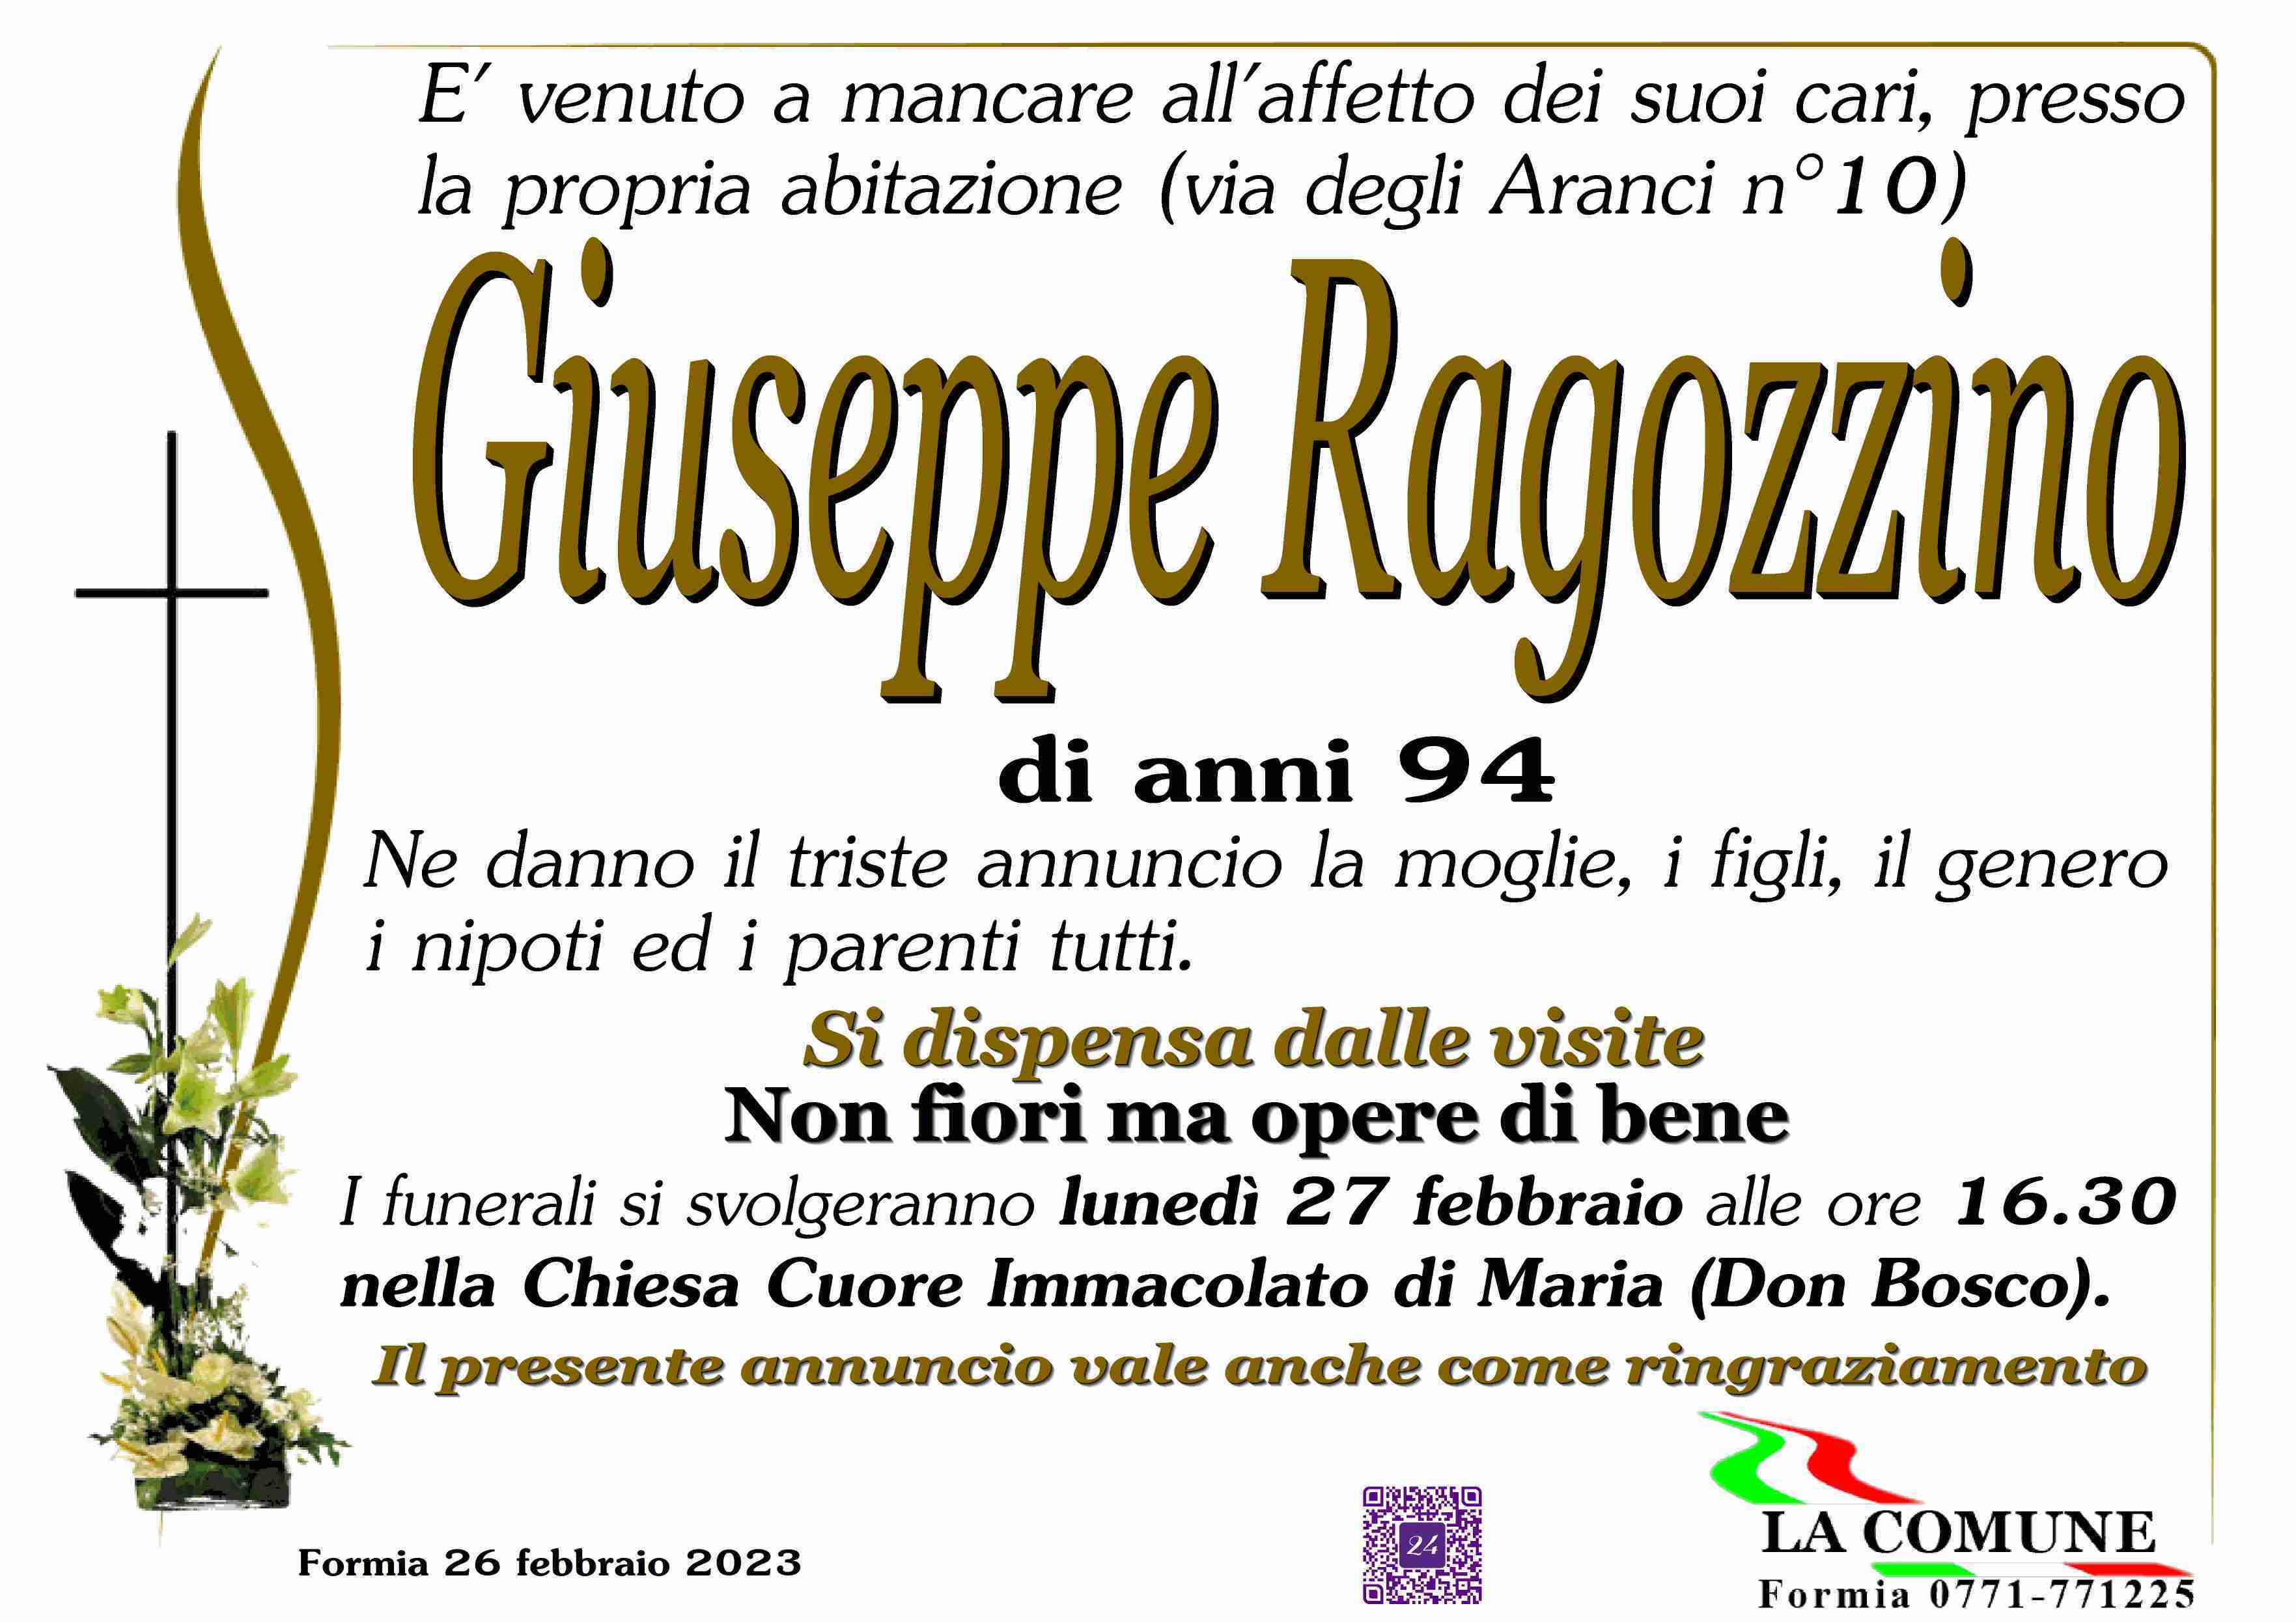 Giuseppe Ragozzino